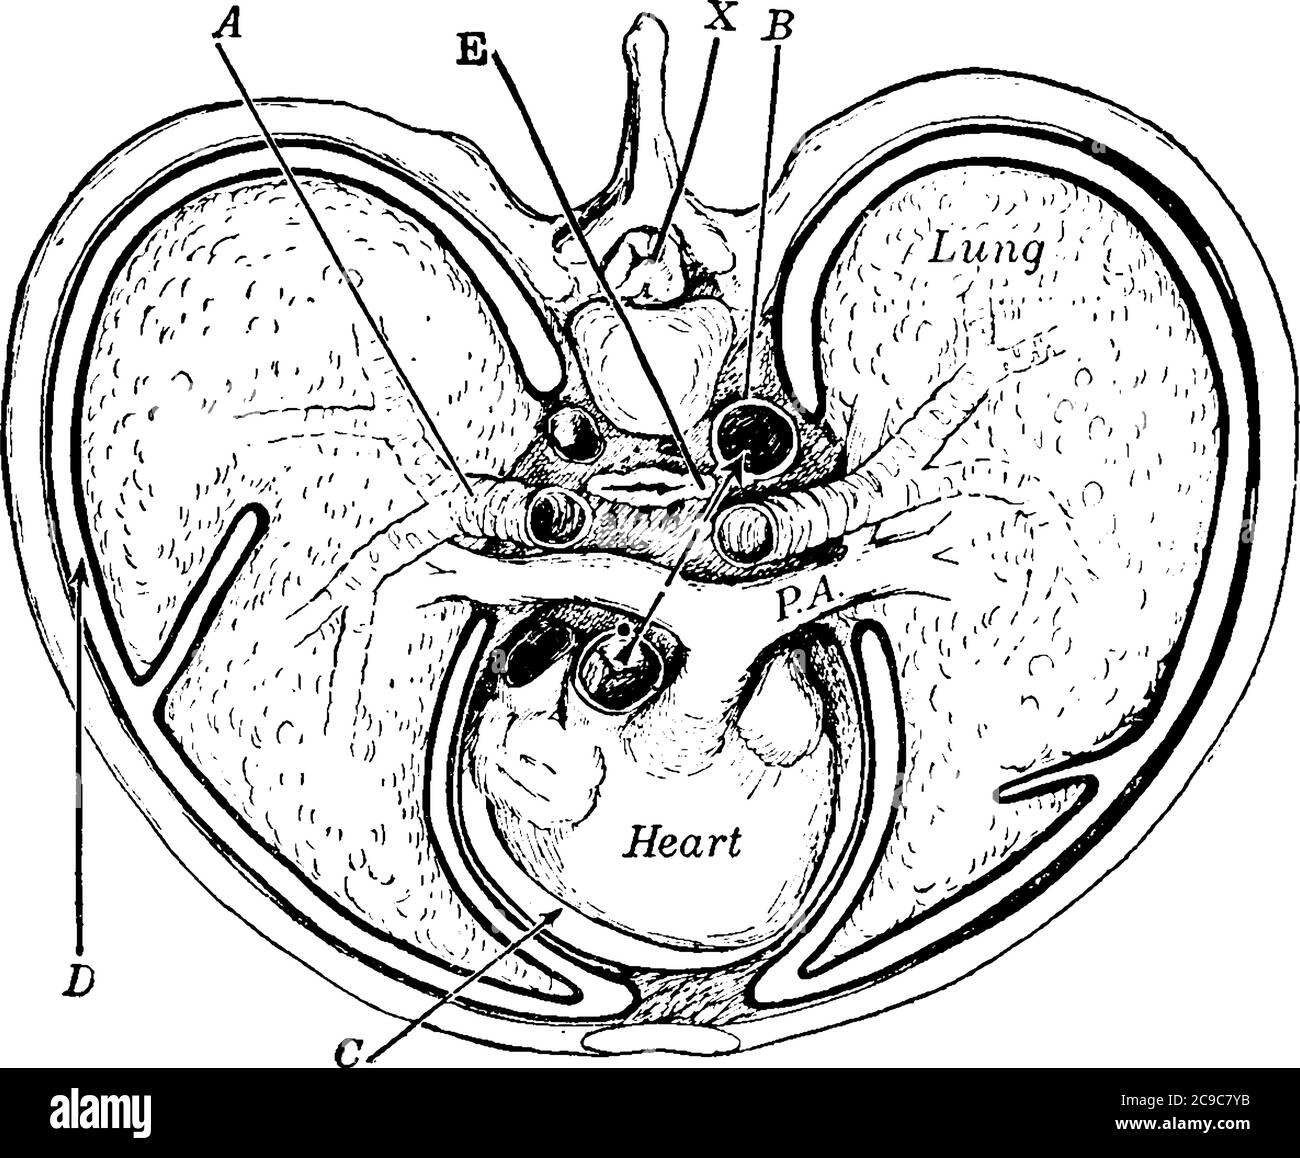 Sezione trasversale del torace, con le parti etichettate come A, B, C, D, e, PA e X, che rappresentano bronco, aorta, spazio pericardico, cavità pleurica, alim Illustrazione Vettoriale